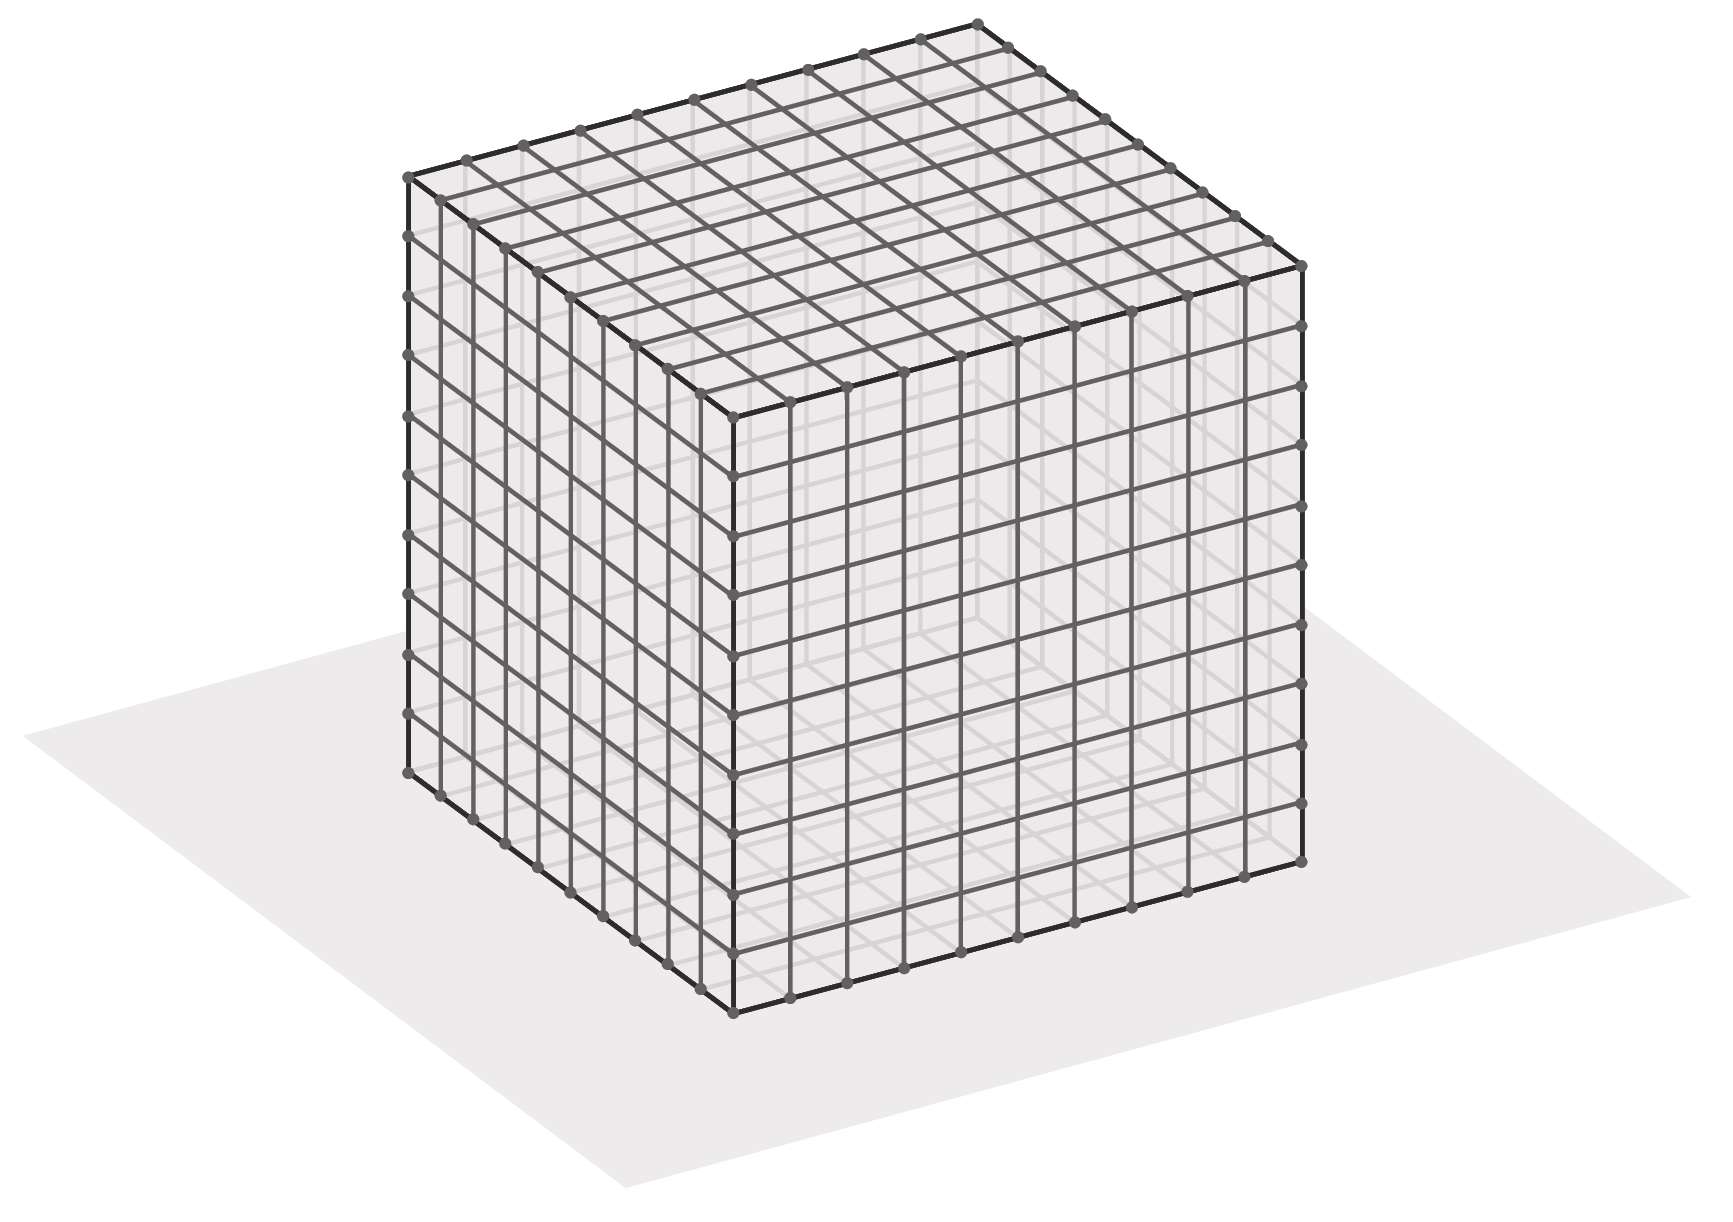 Ilustração. Cubo dividido em mil cubinhos congruentes.